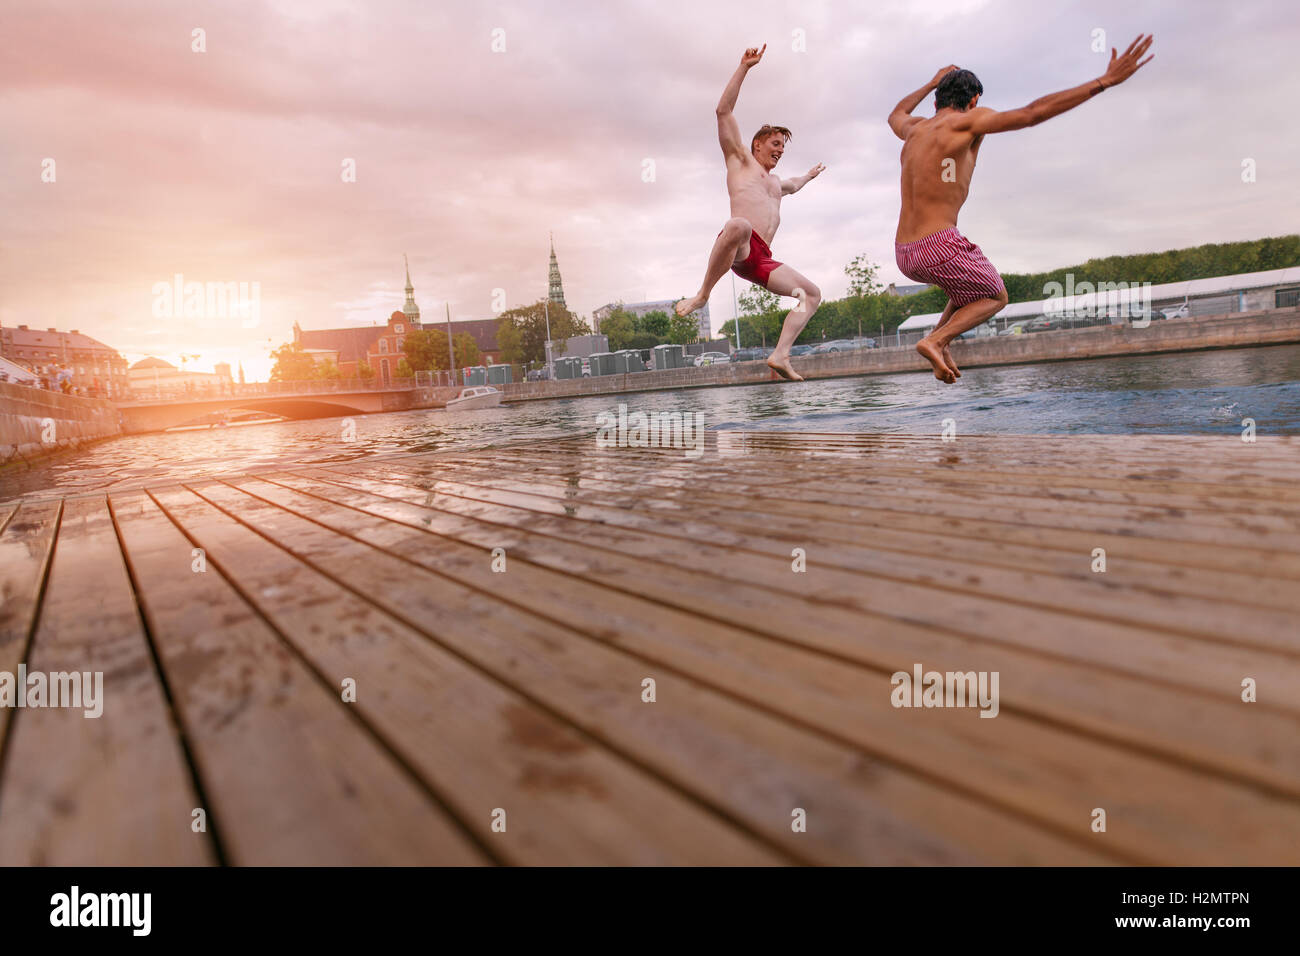 Junge Menschen springen in See in der Stadt. Zwei junge Freunde, ein Wochenende zu genießen. Stockfoto